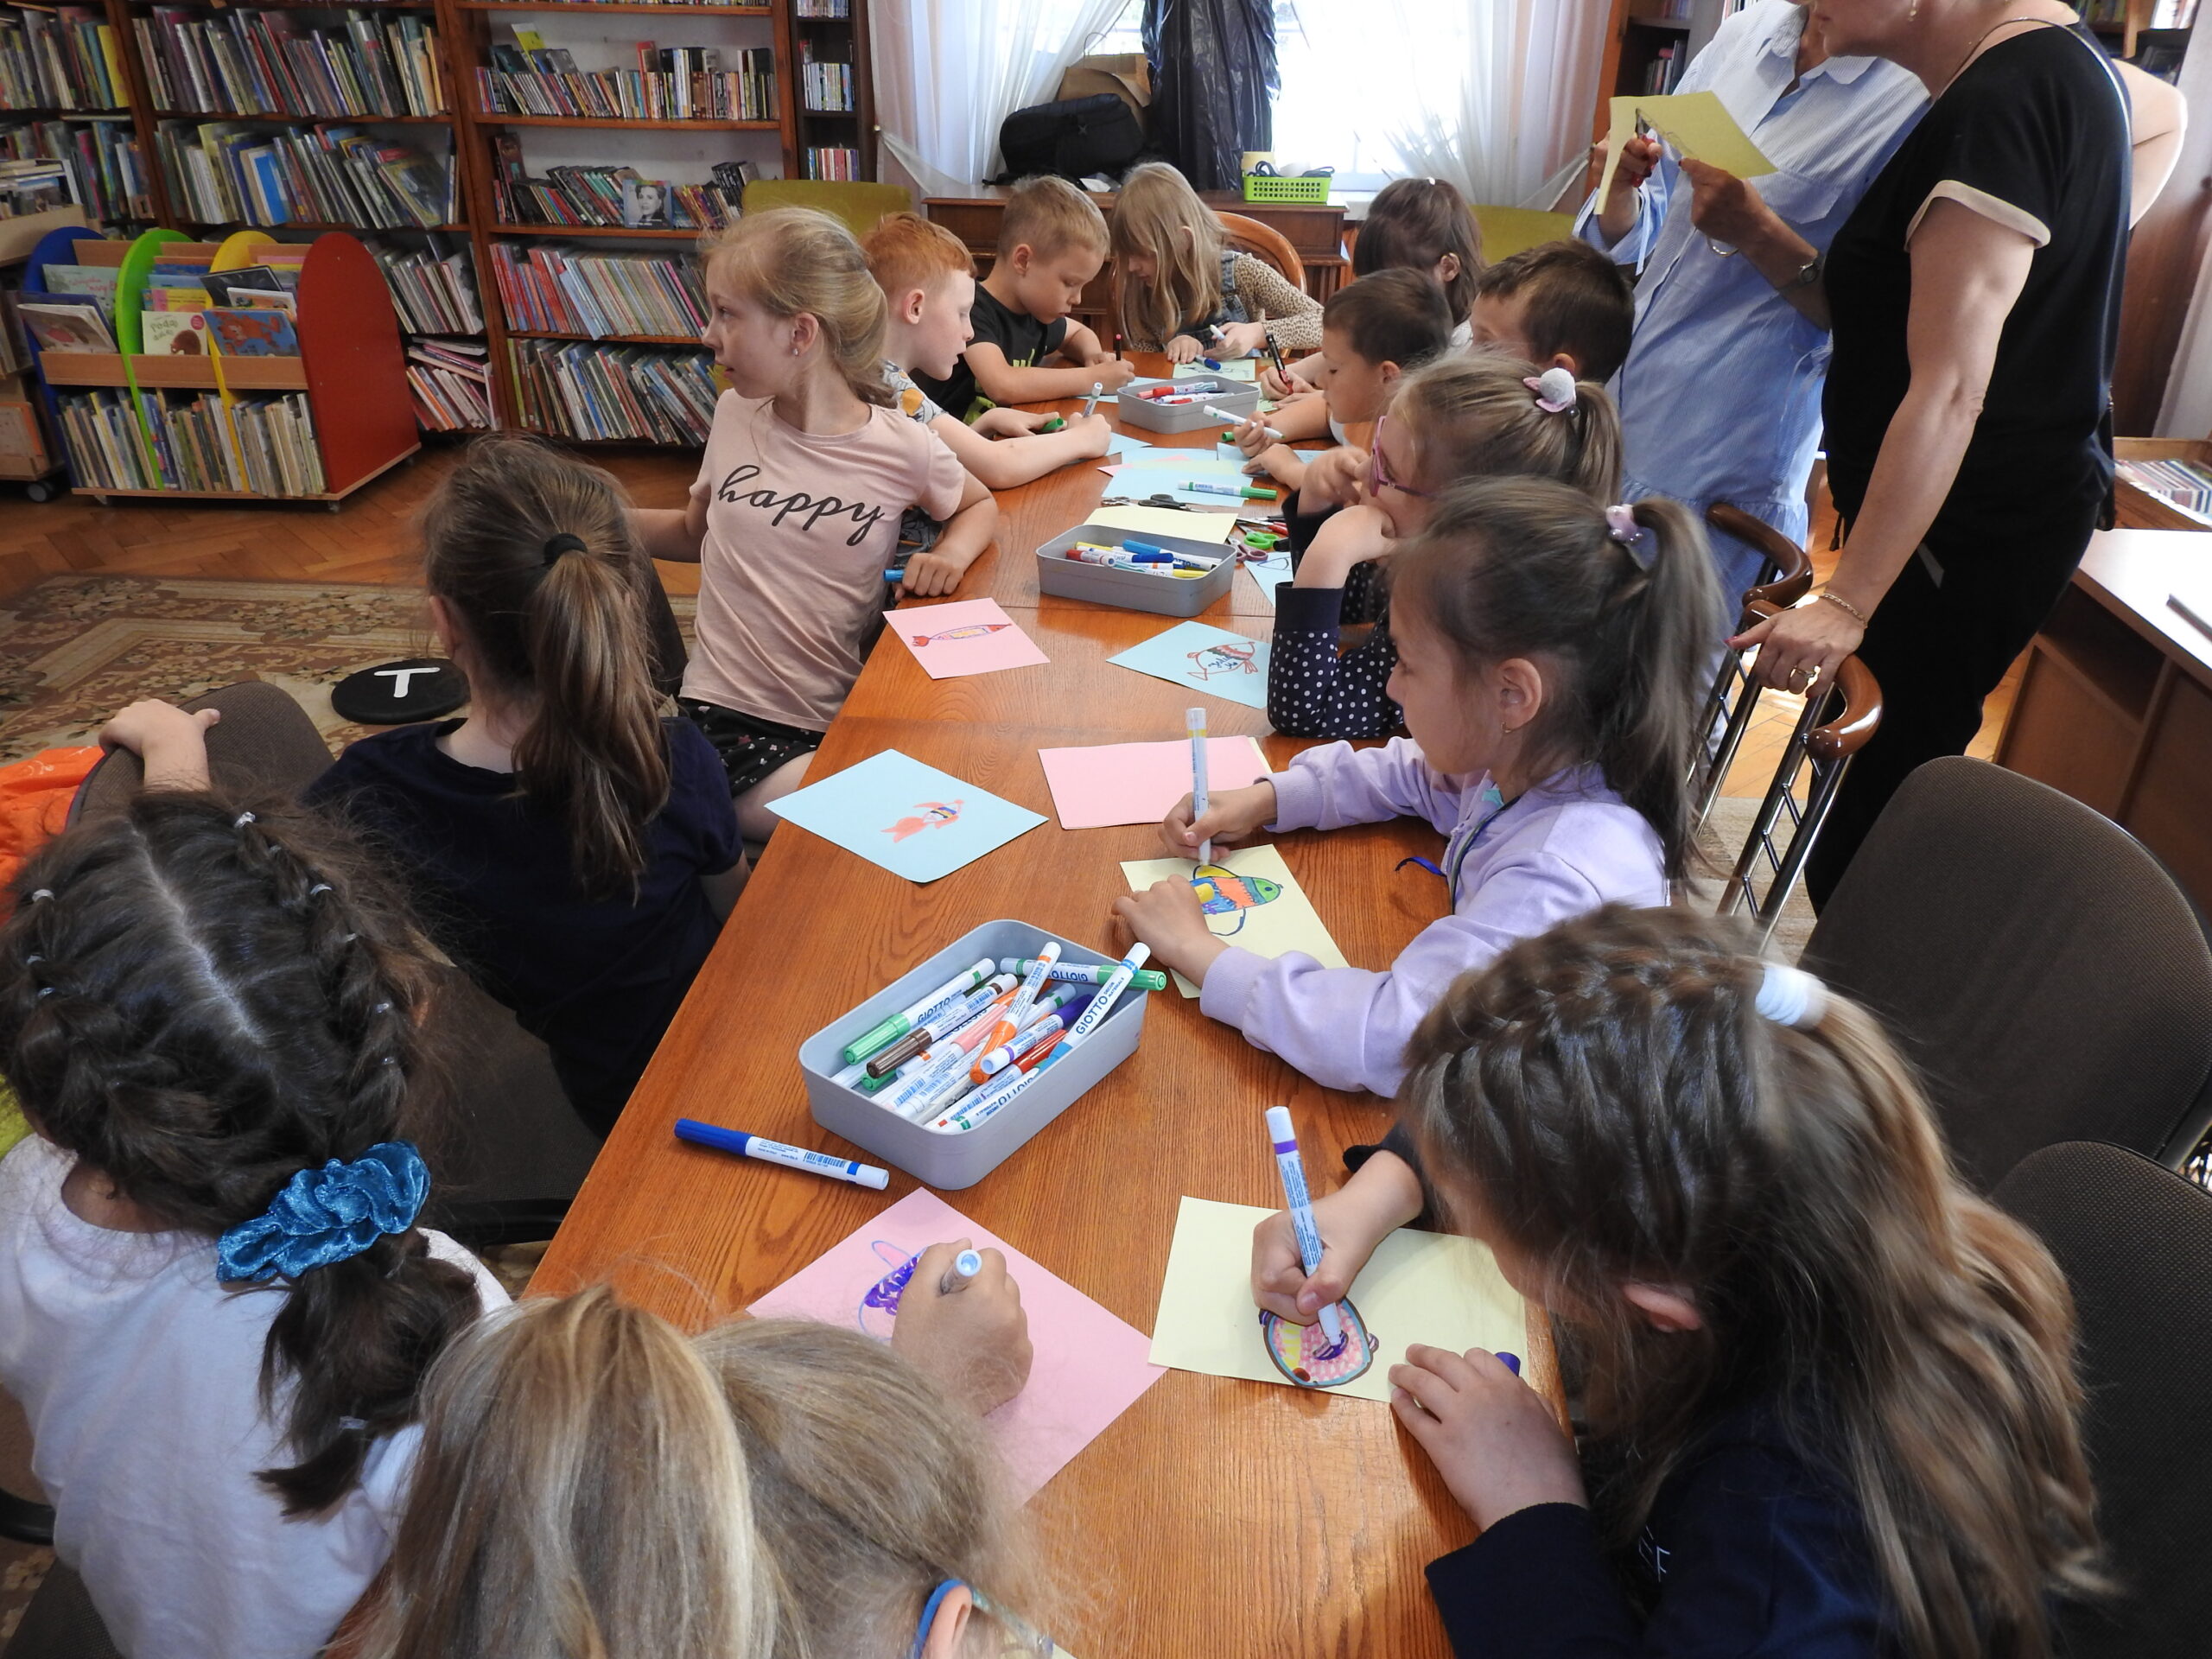 Grupa dzieci siedzi wokół stołu. Przed nimi, na stole, leżą kolorowe kartki oraz mazaki. Część dzieci maluje na kartkach flamastrami, a część jest zwrócona w lewą stroną, w kierunku czegoś, co znajduje się poza zdjęciem. Dzieci malują ryby.